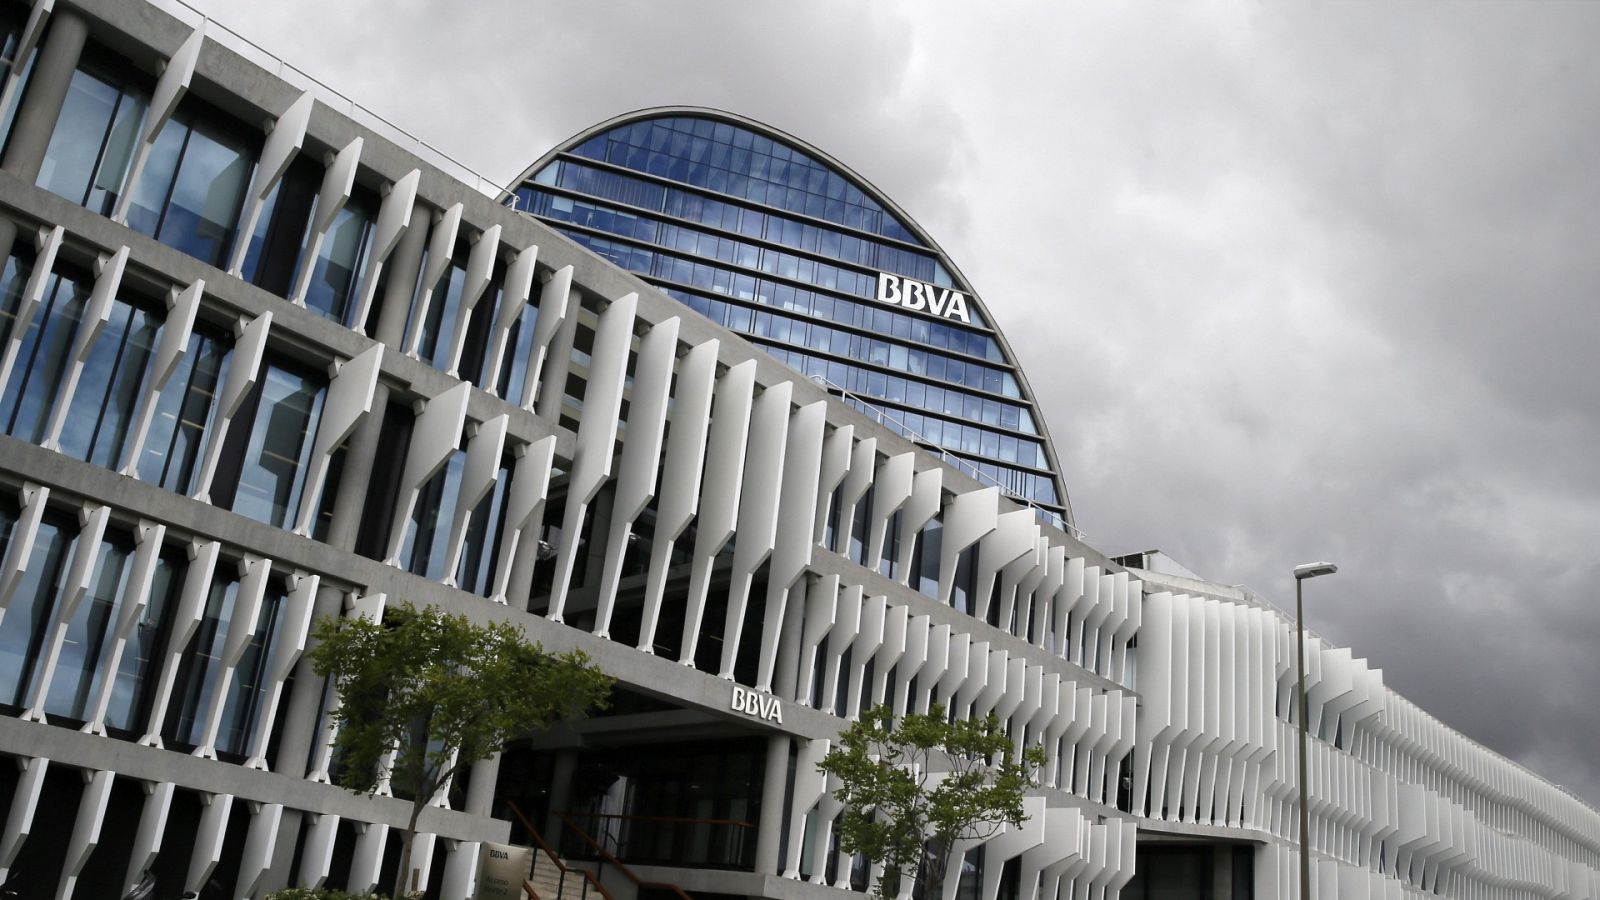 La sede del BBVA, entidad que prepara un ERE para 3.800 trabajadores en España